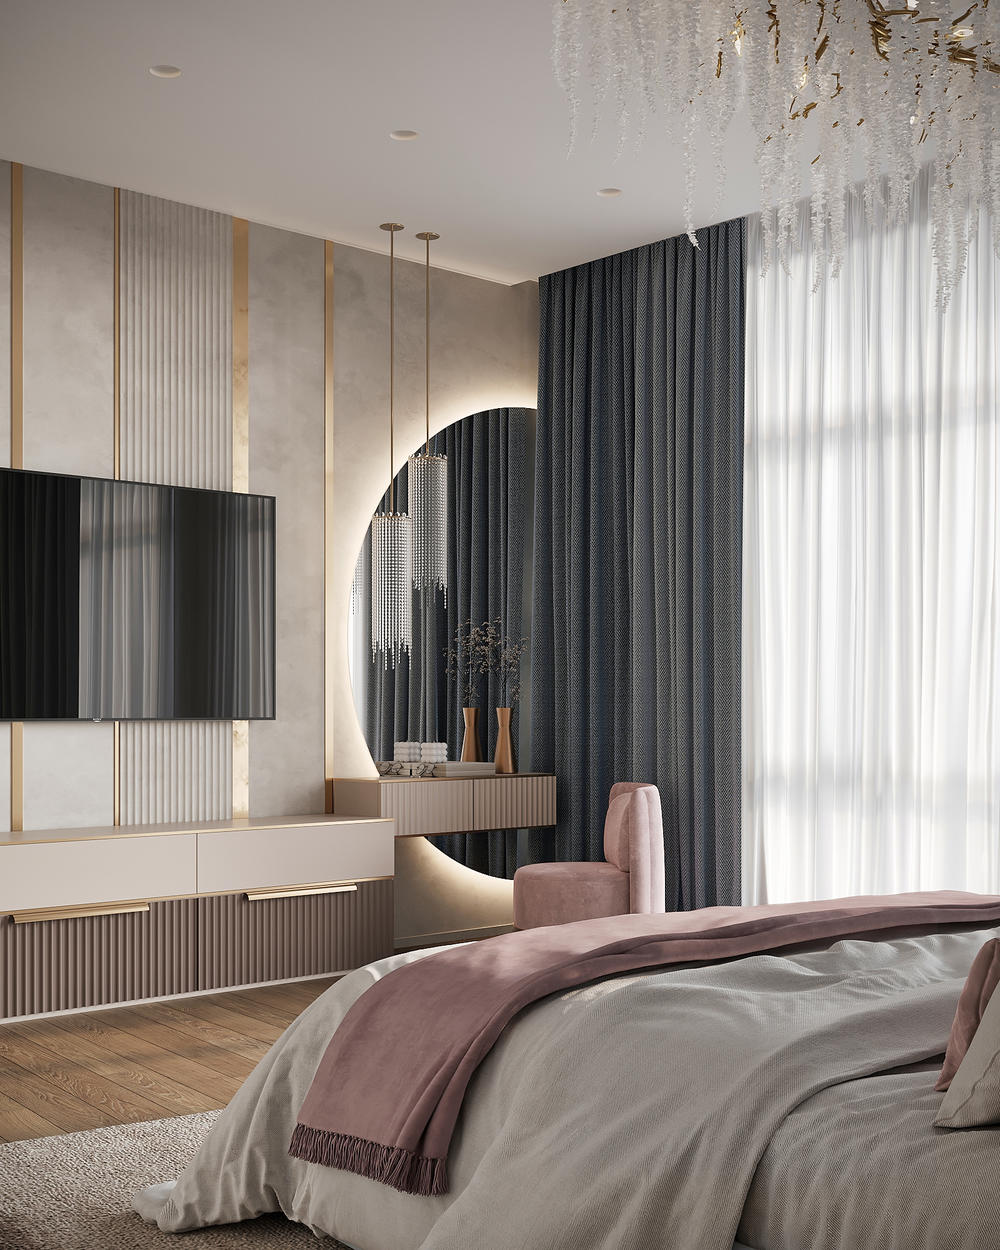 Смешанный стиль спального помещения - классика и элементы ар-деко